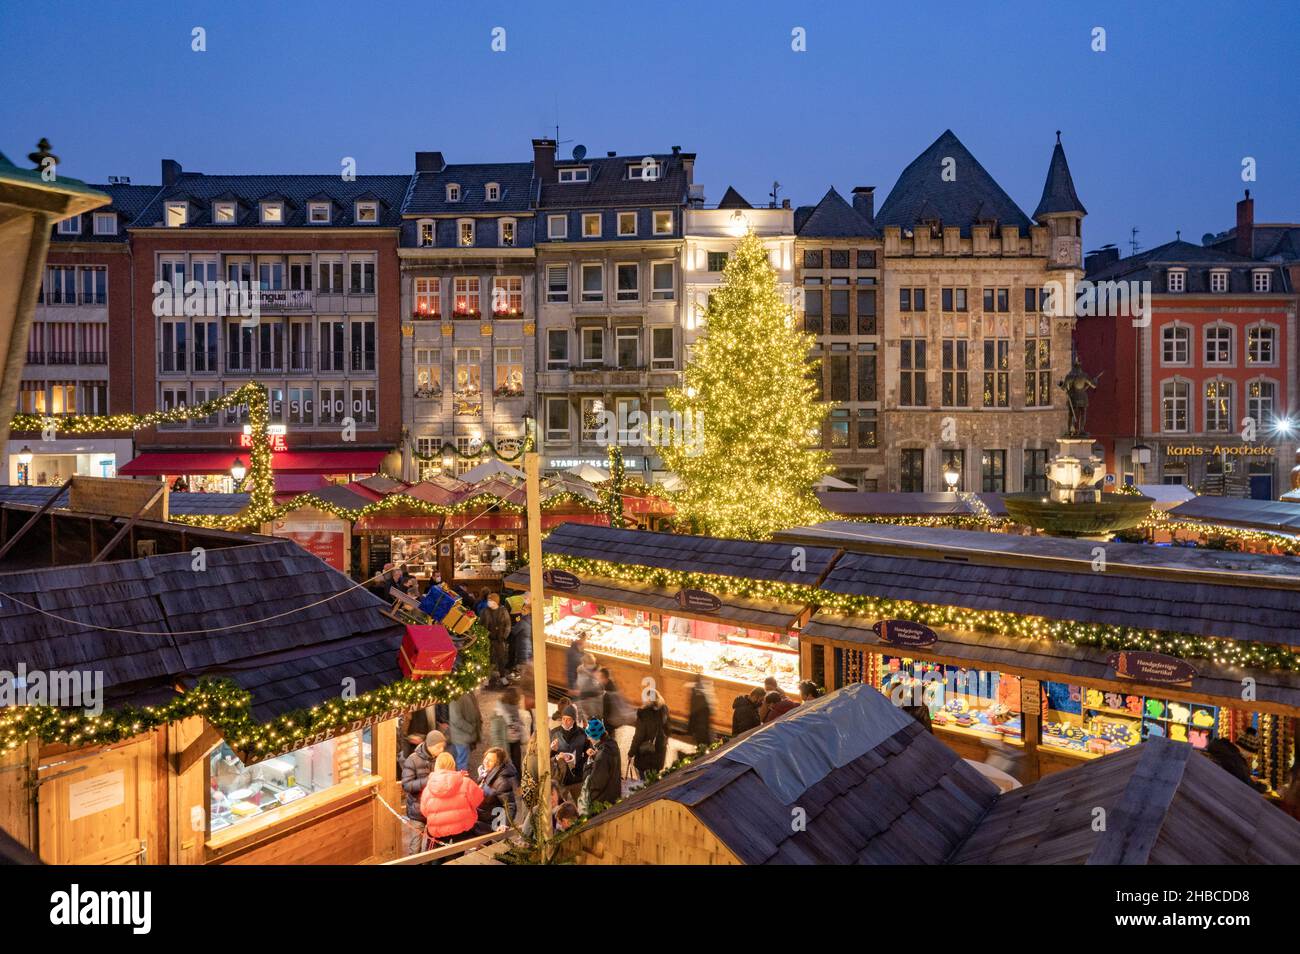 Aachen -Der Aachener Weihnachtsmarkt lockt jährlich Hunderttausende Besucher auf die Plätze und in die Gassen rund um den Aachener Dom und das Rathaus Foto Stock